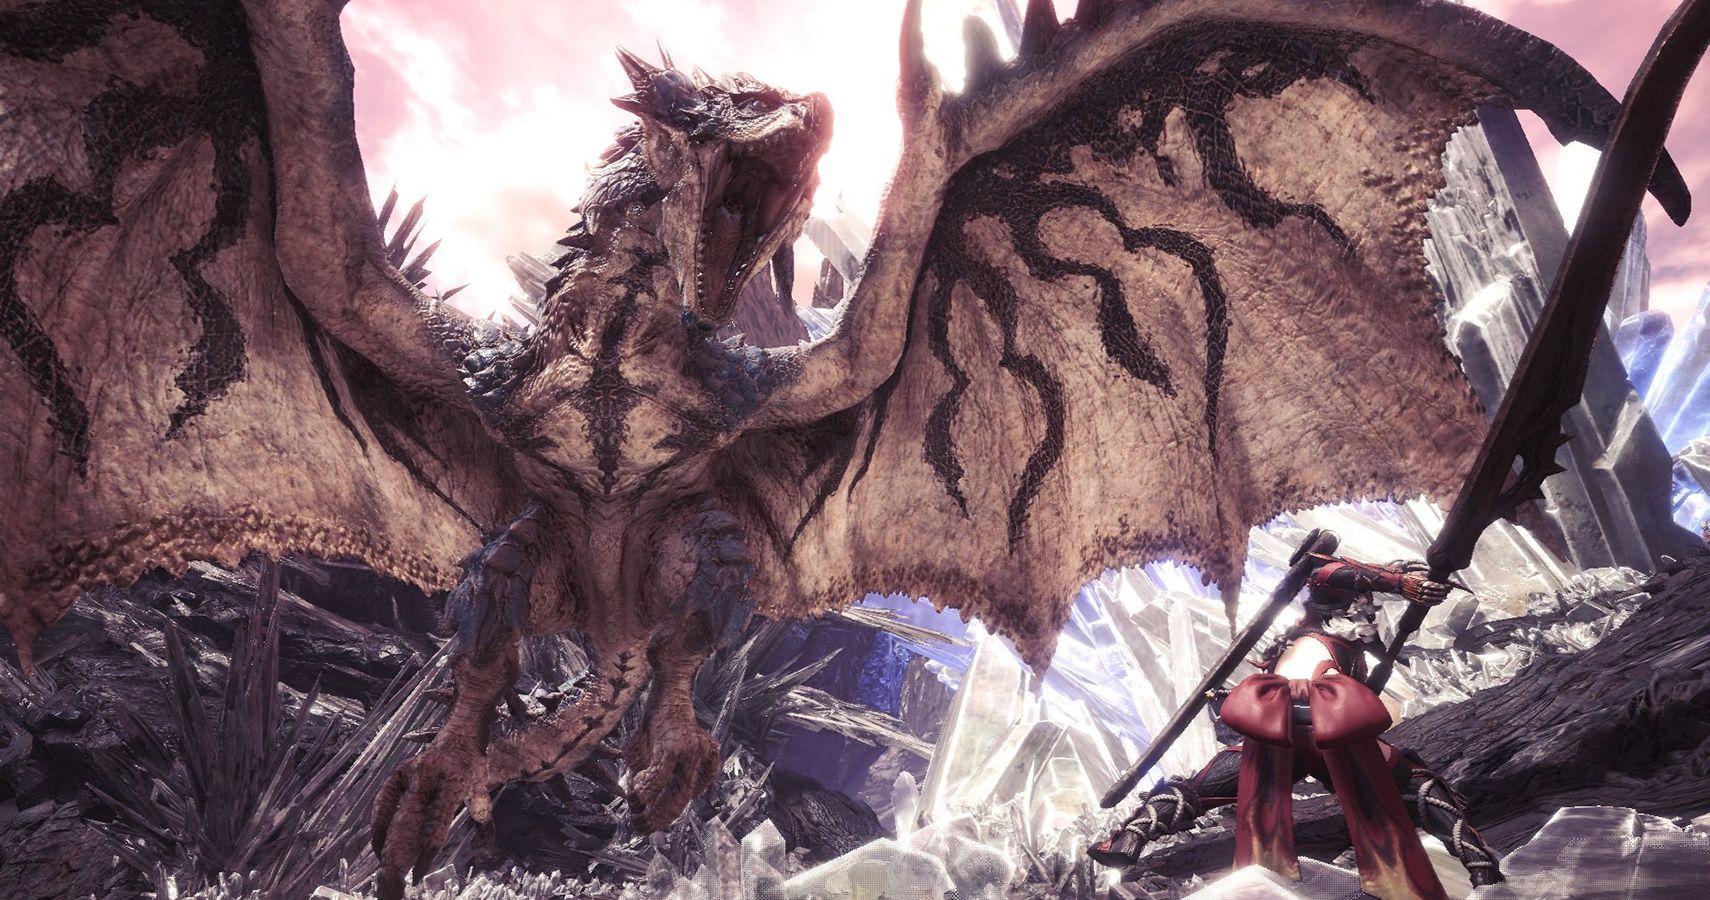 The Toughest Monsters in Monster Hunter World Ranked